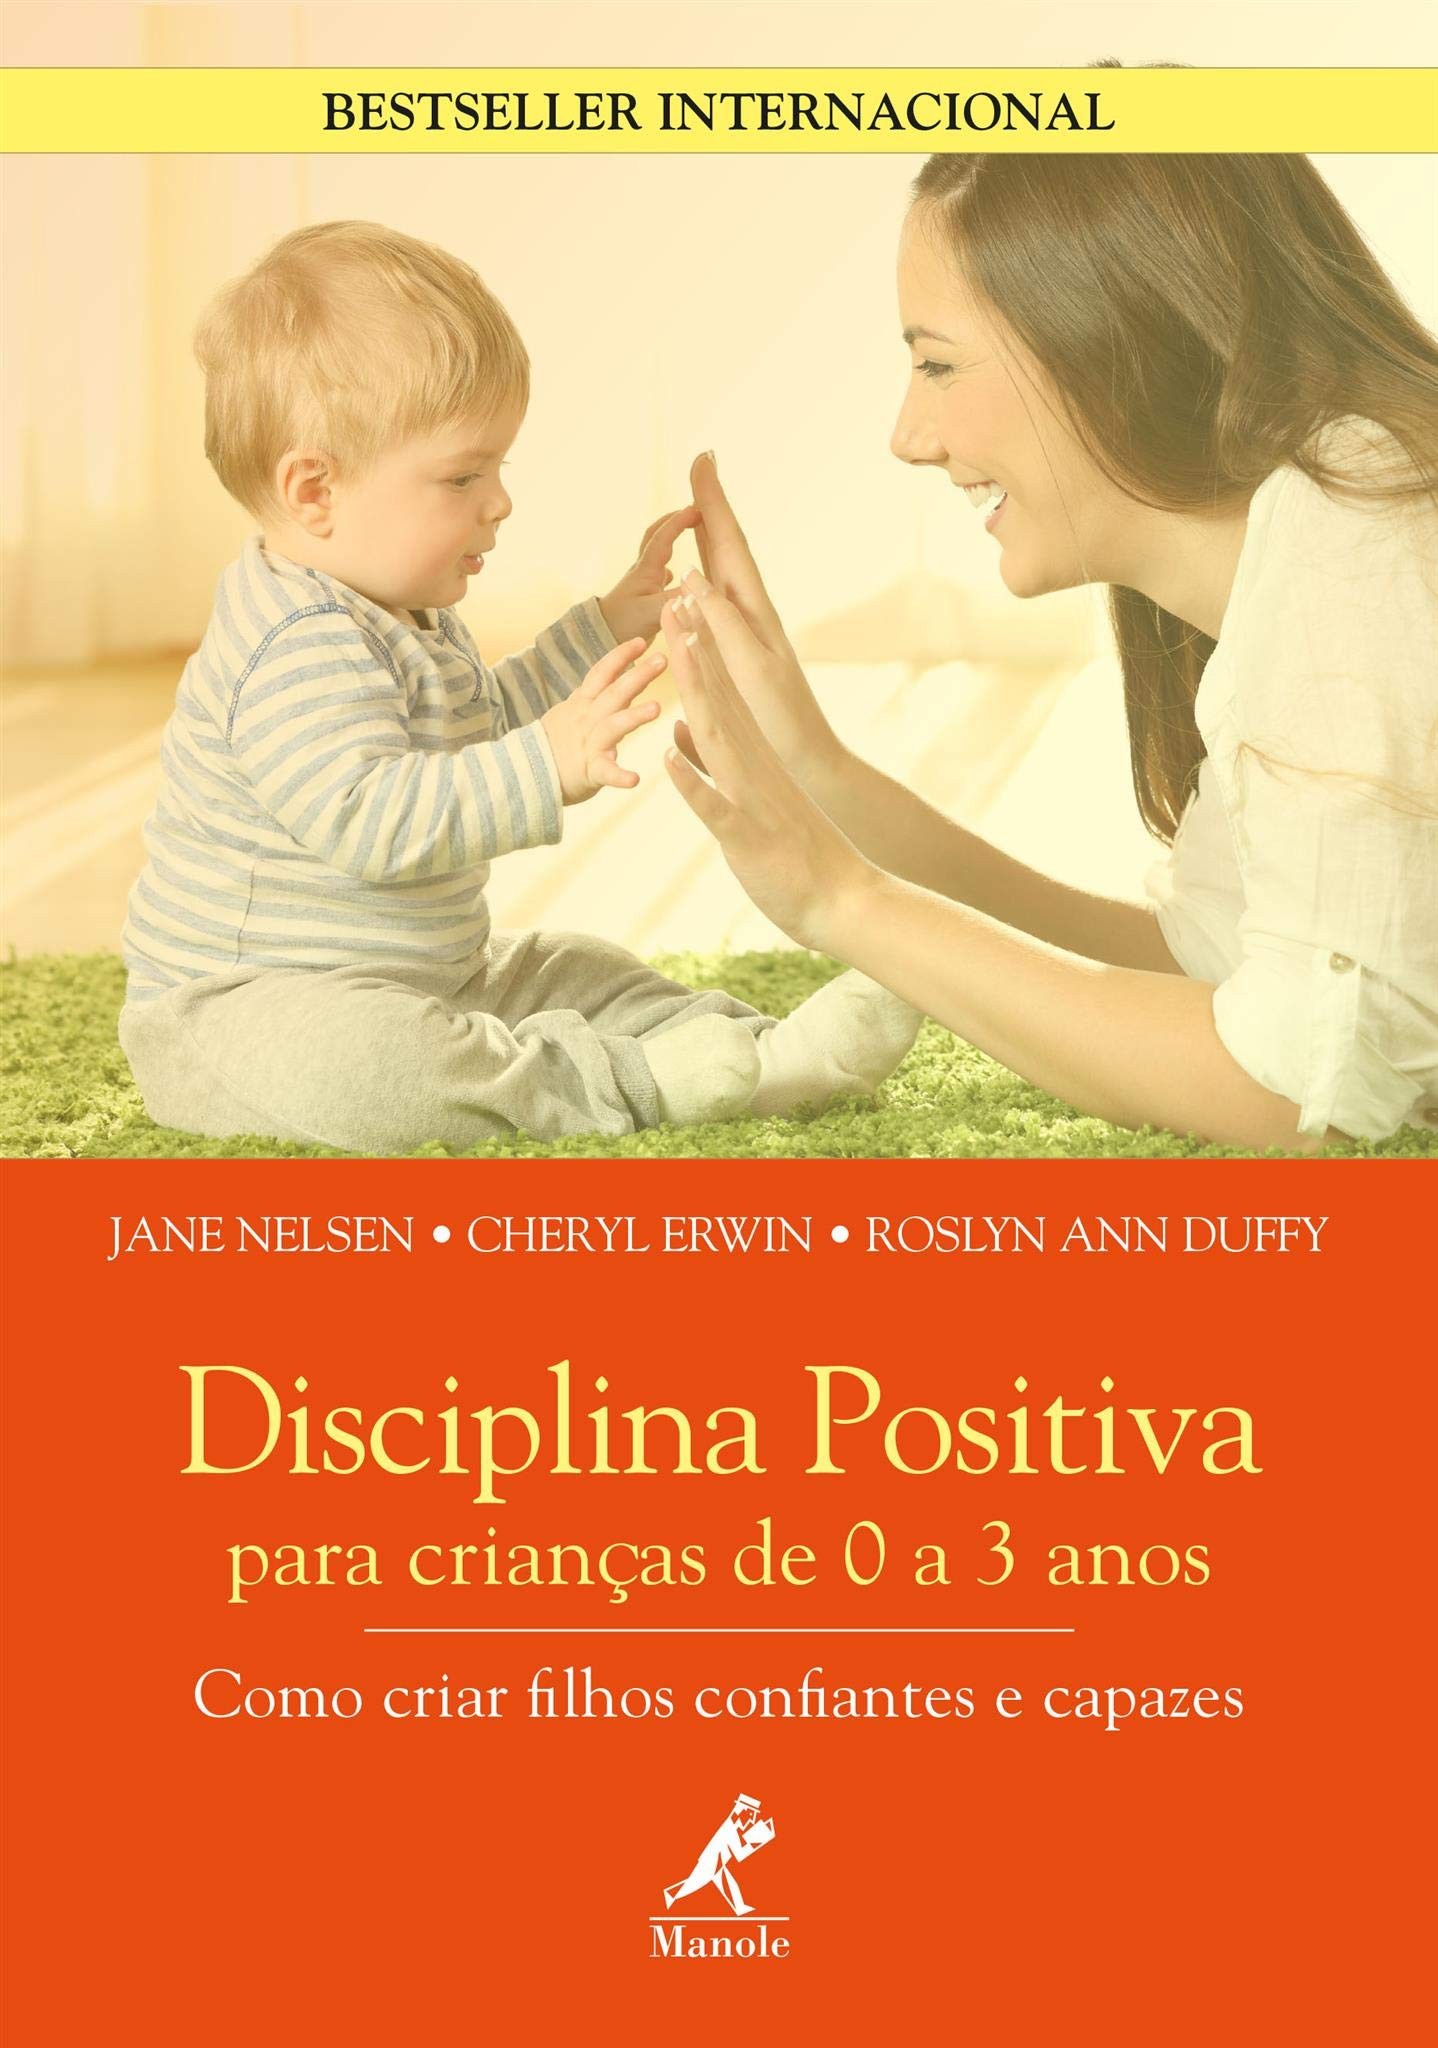 Disciplina positiva para crianças de 0 a 3 anos: como criar filhos confiantes e capazes (Foto: Reprodução/Amazon)